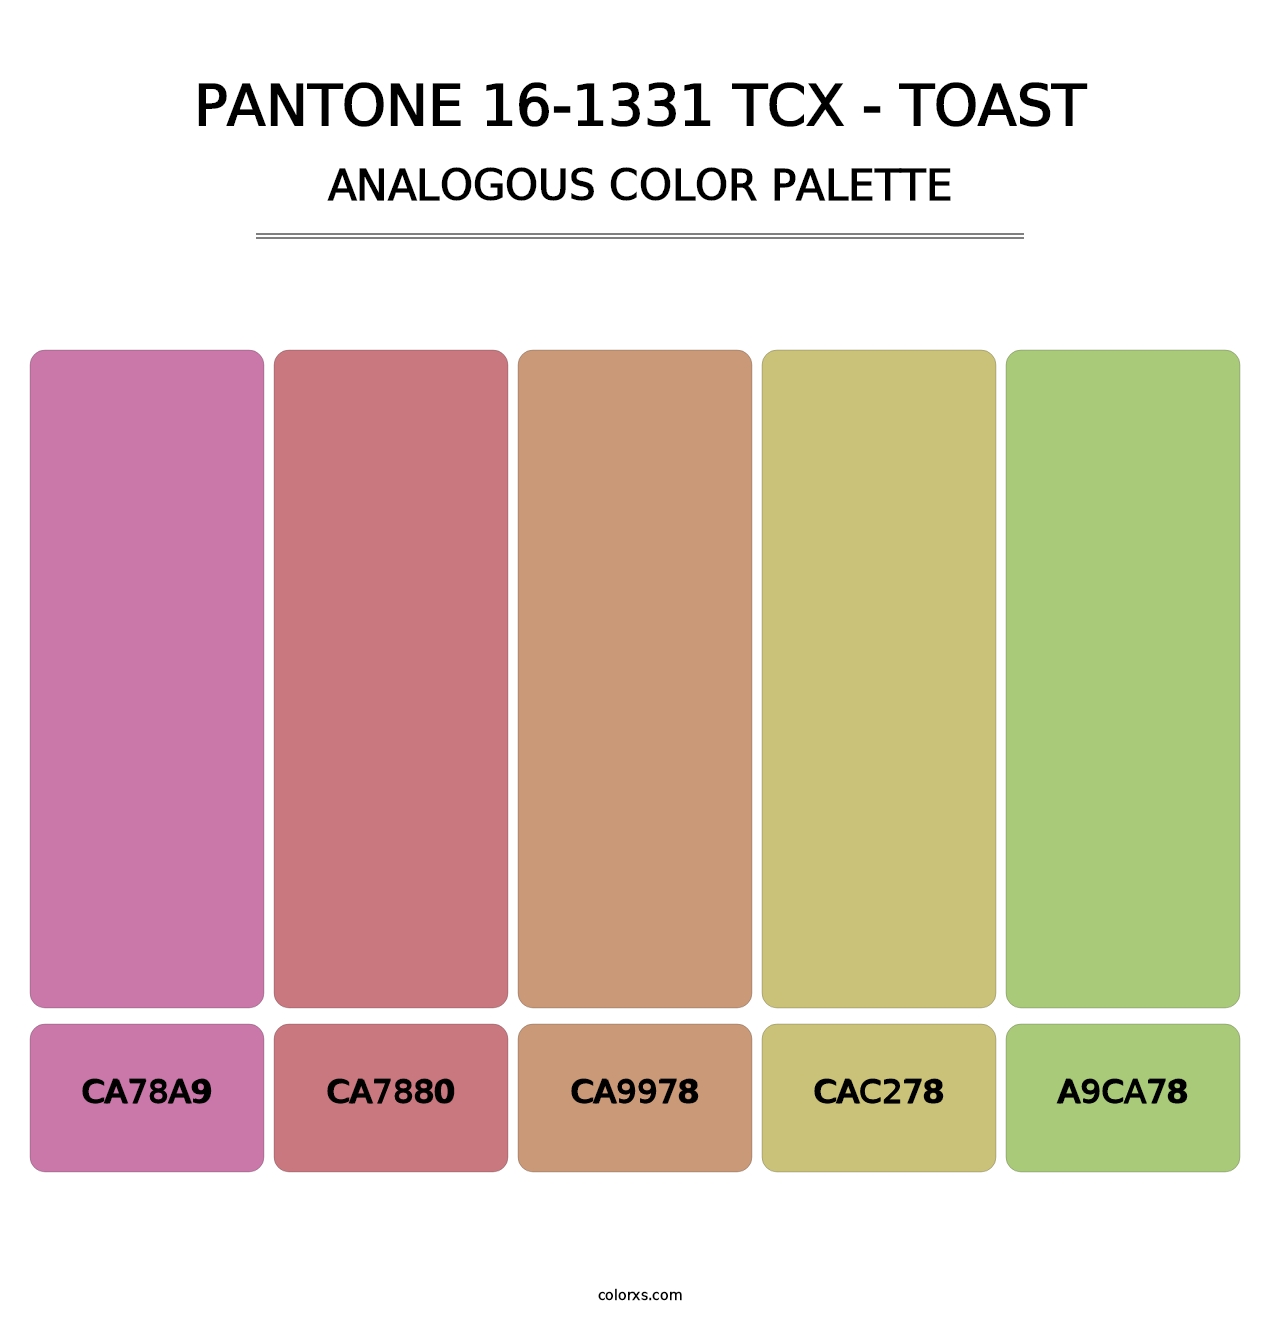 PANTONE 16-1331 TCX - Toast - Analogous Color Palette